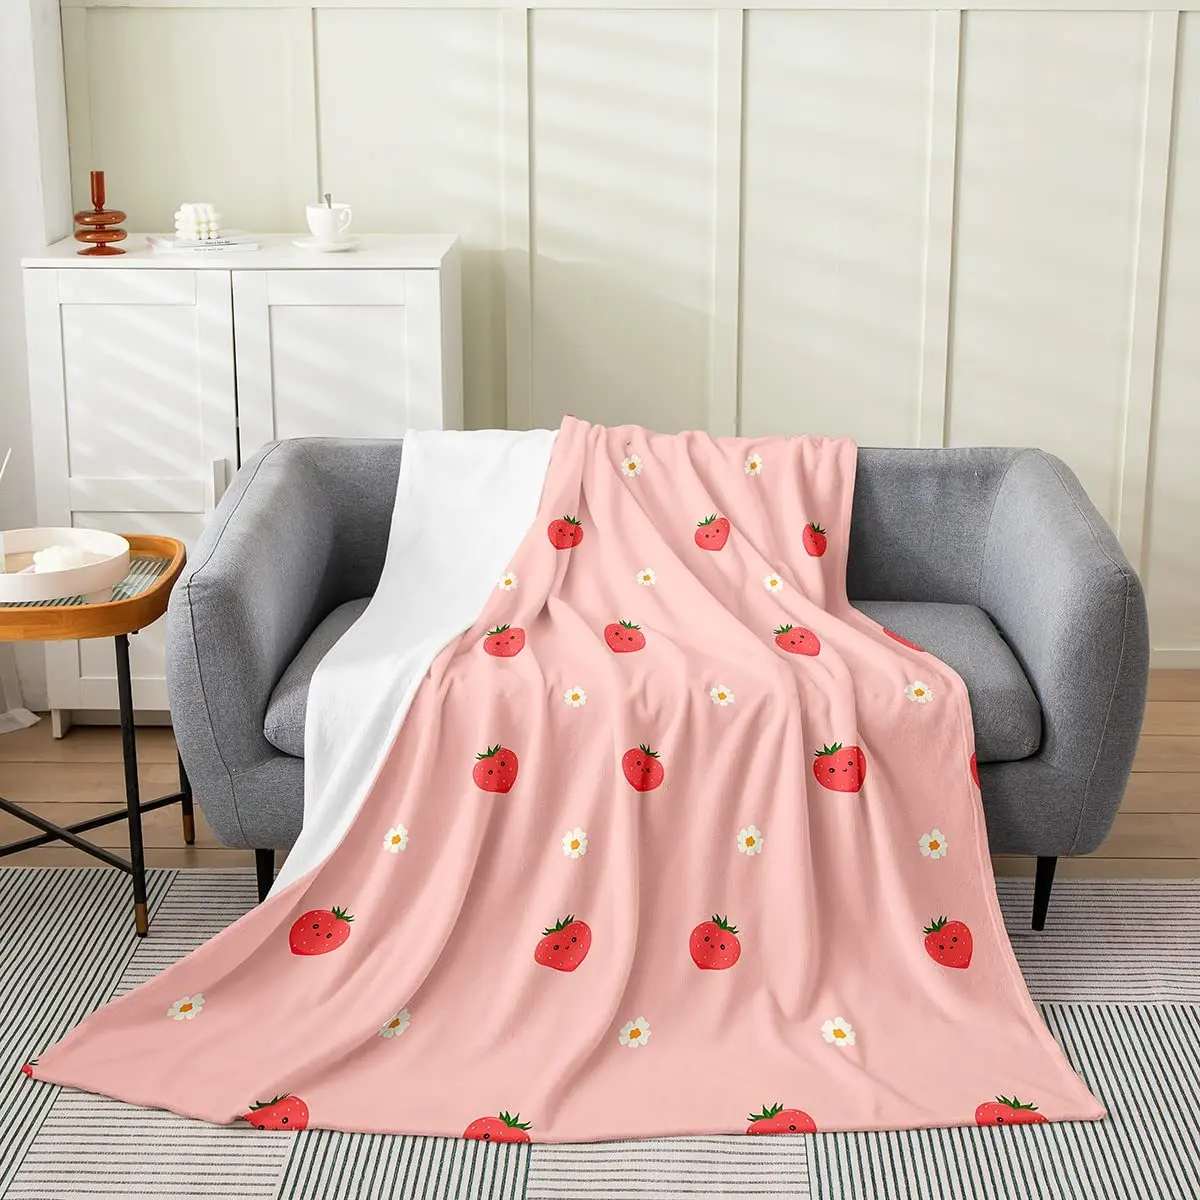 

Одеяло, мягкое Фланелевое покрывало с узором винограда, апельсина, клубники, легкое, для кровати, дивана, кровати, двуспальной кровати, фруктов